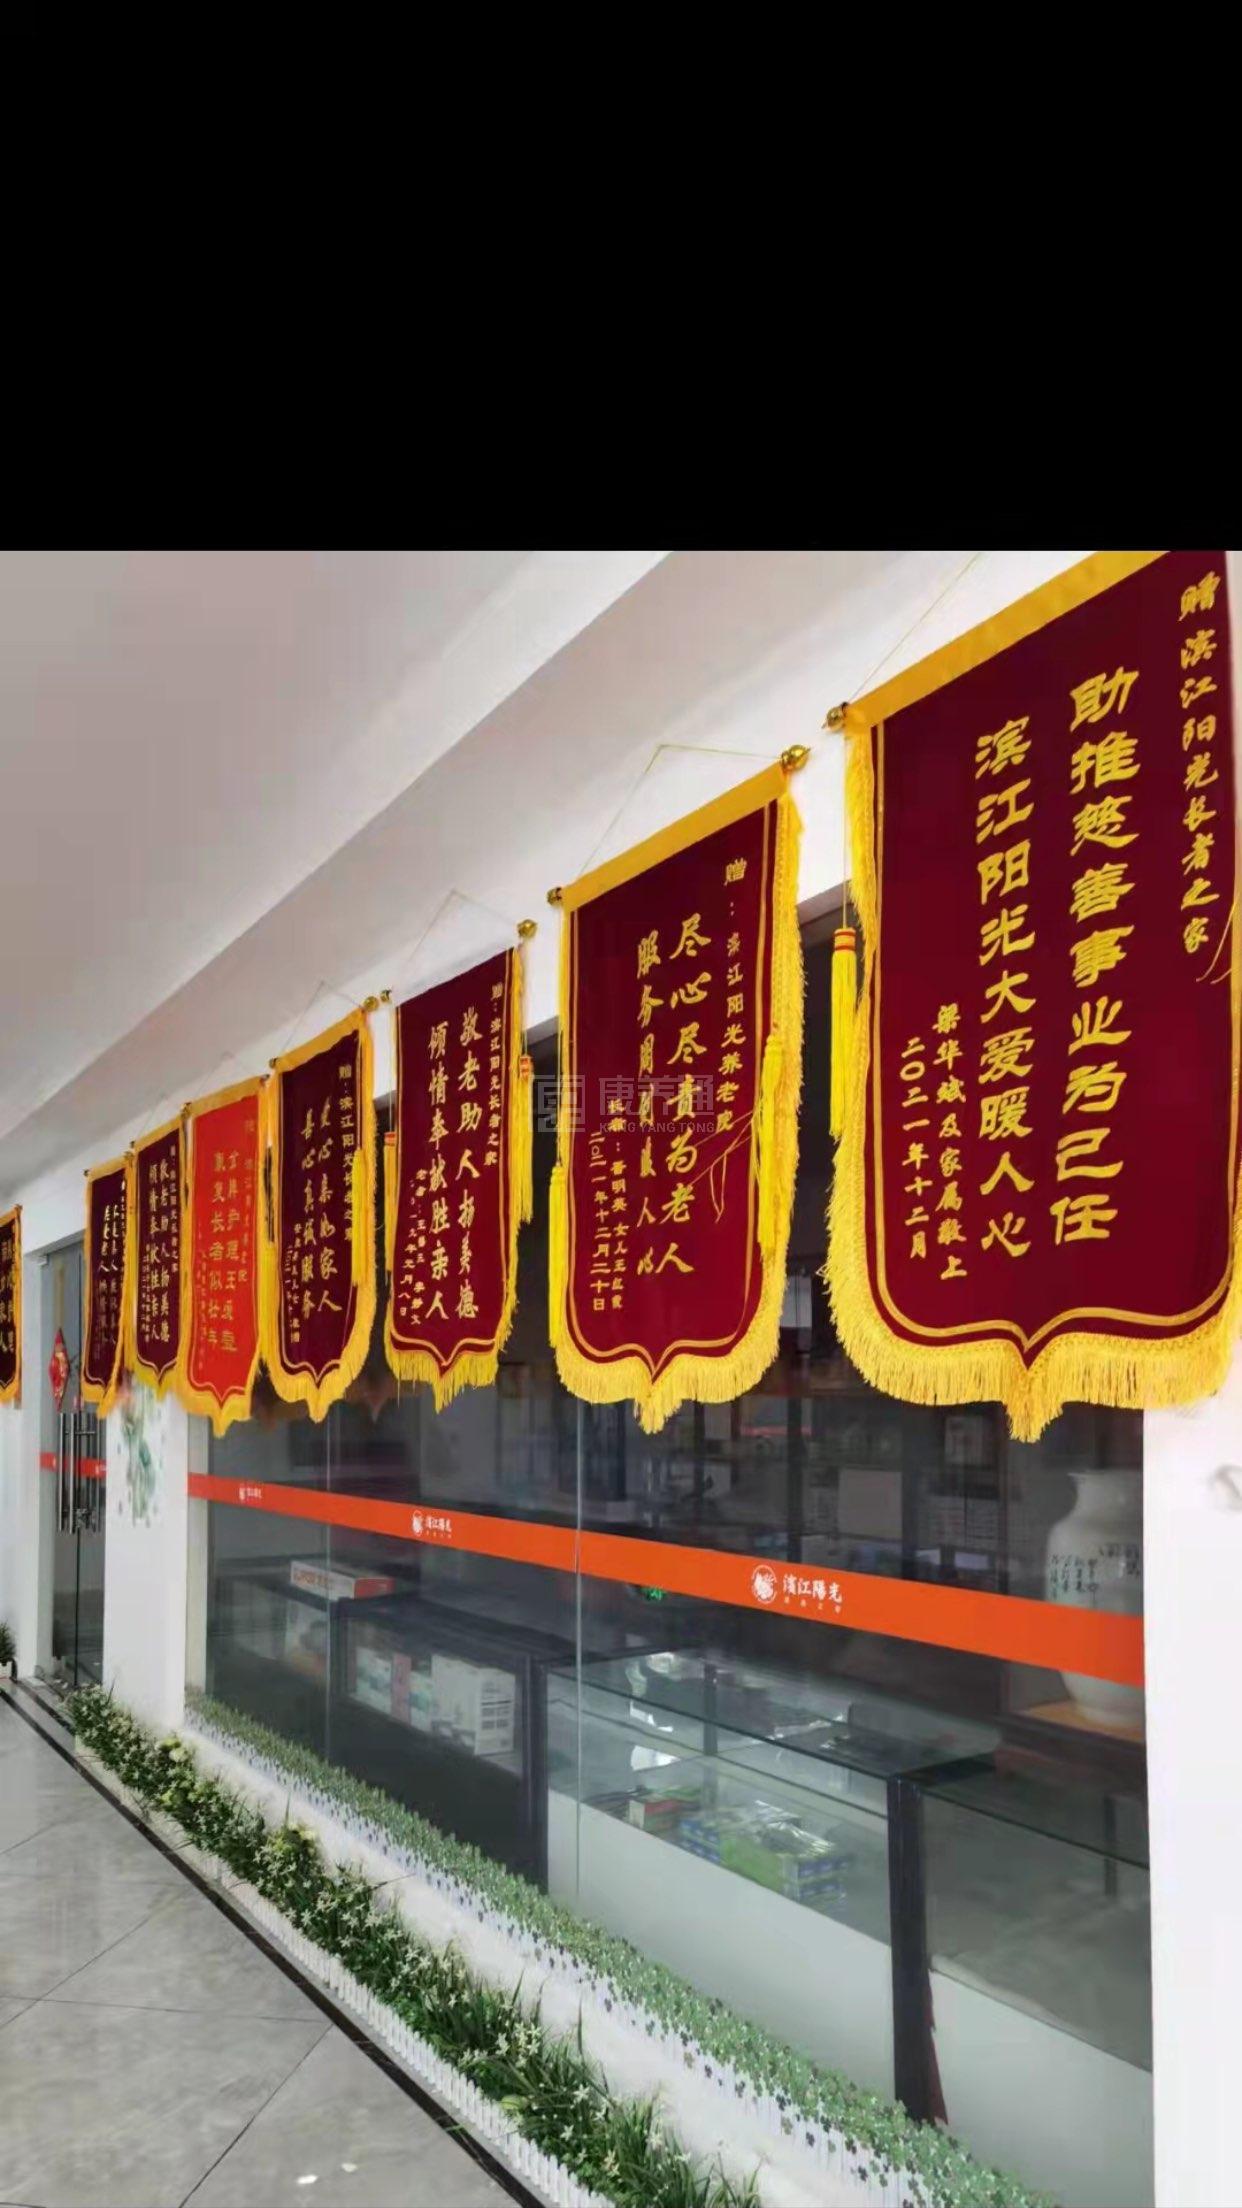 芜湖滨江长者阳光养老服务有限公司服务项目图6让长者体面而尊严地生活